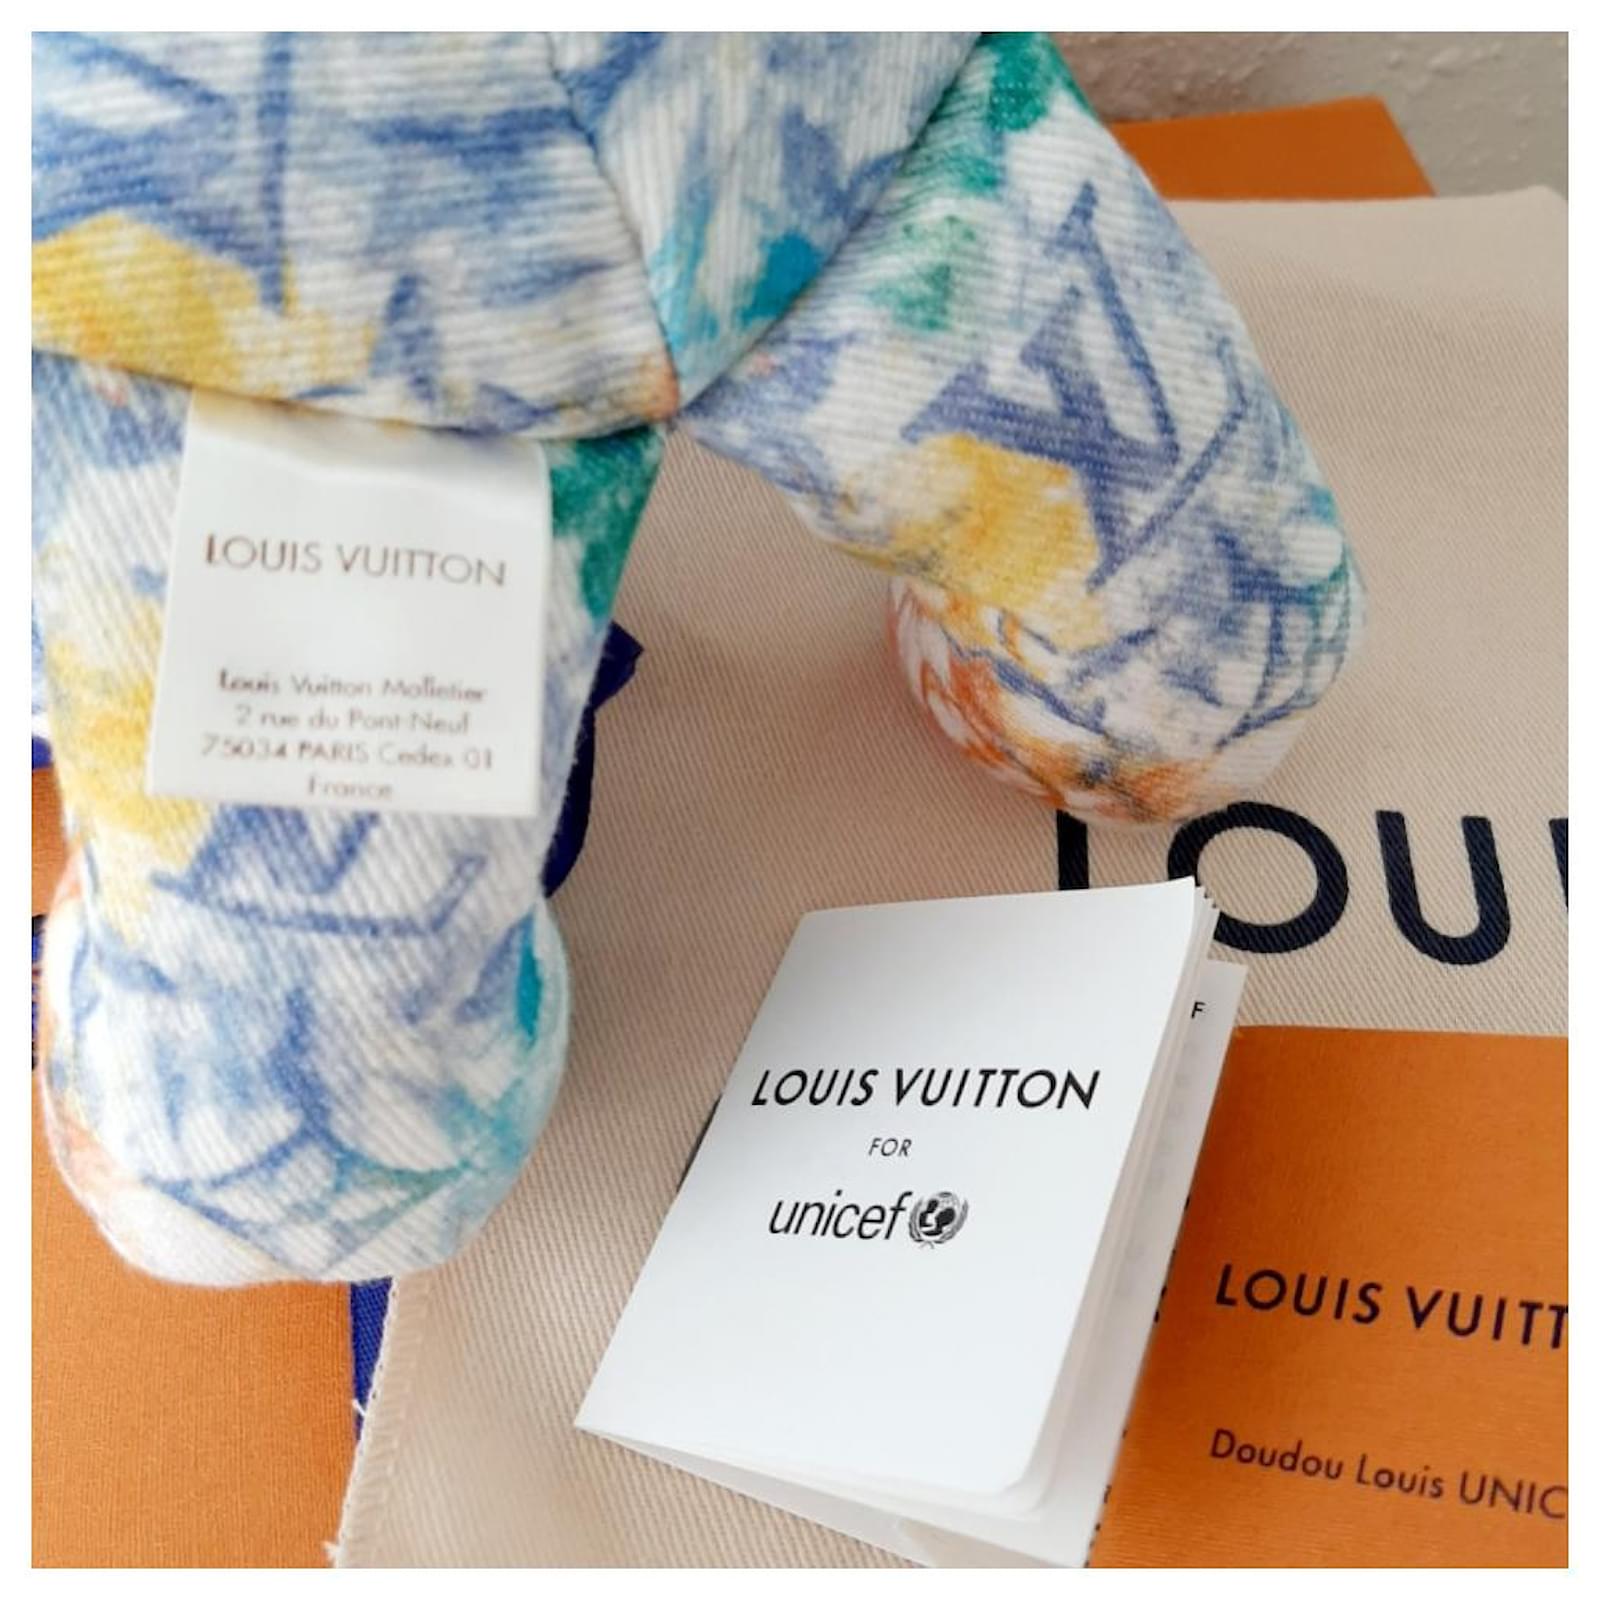 Louis Vuitton Ultra Rare Unicef Multicolor Monogram DouDou Teddy